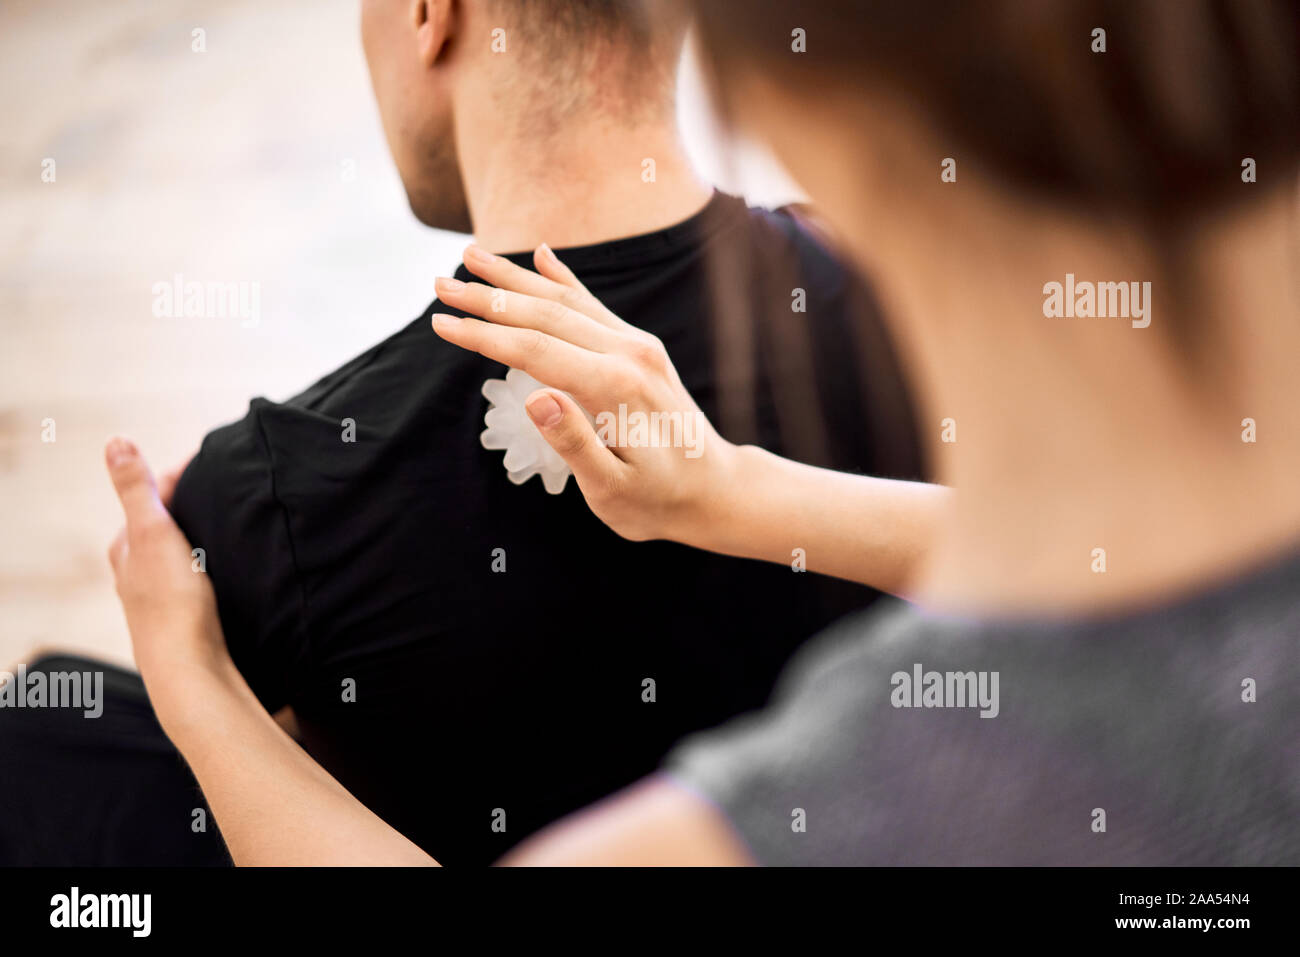 Mujer realizando masaje de espalda al hombre con bolas de masaje la habitación, cerrar Fotografía de stock -